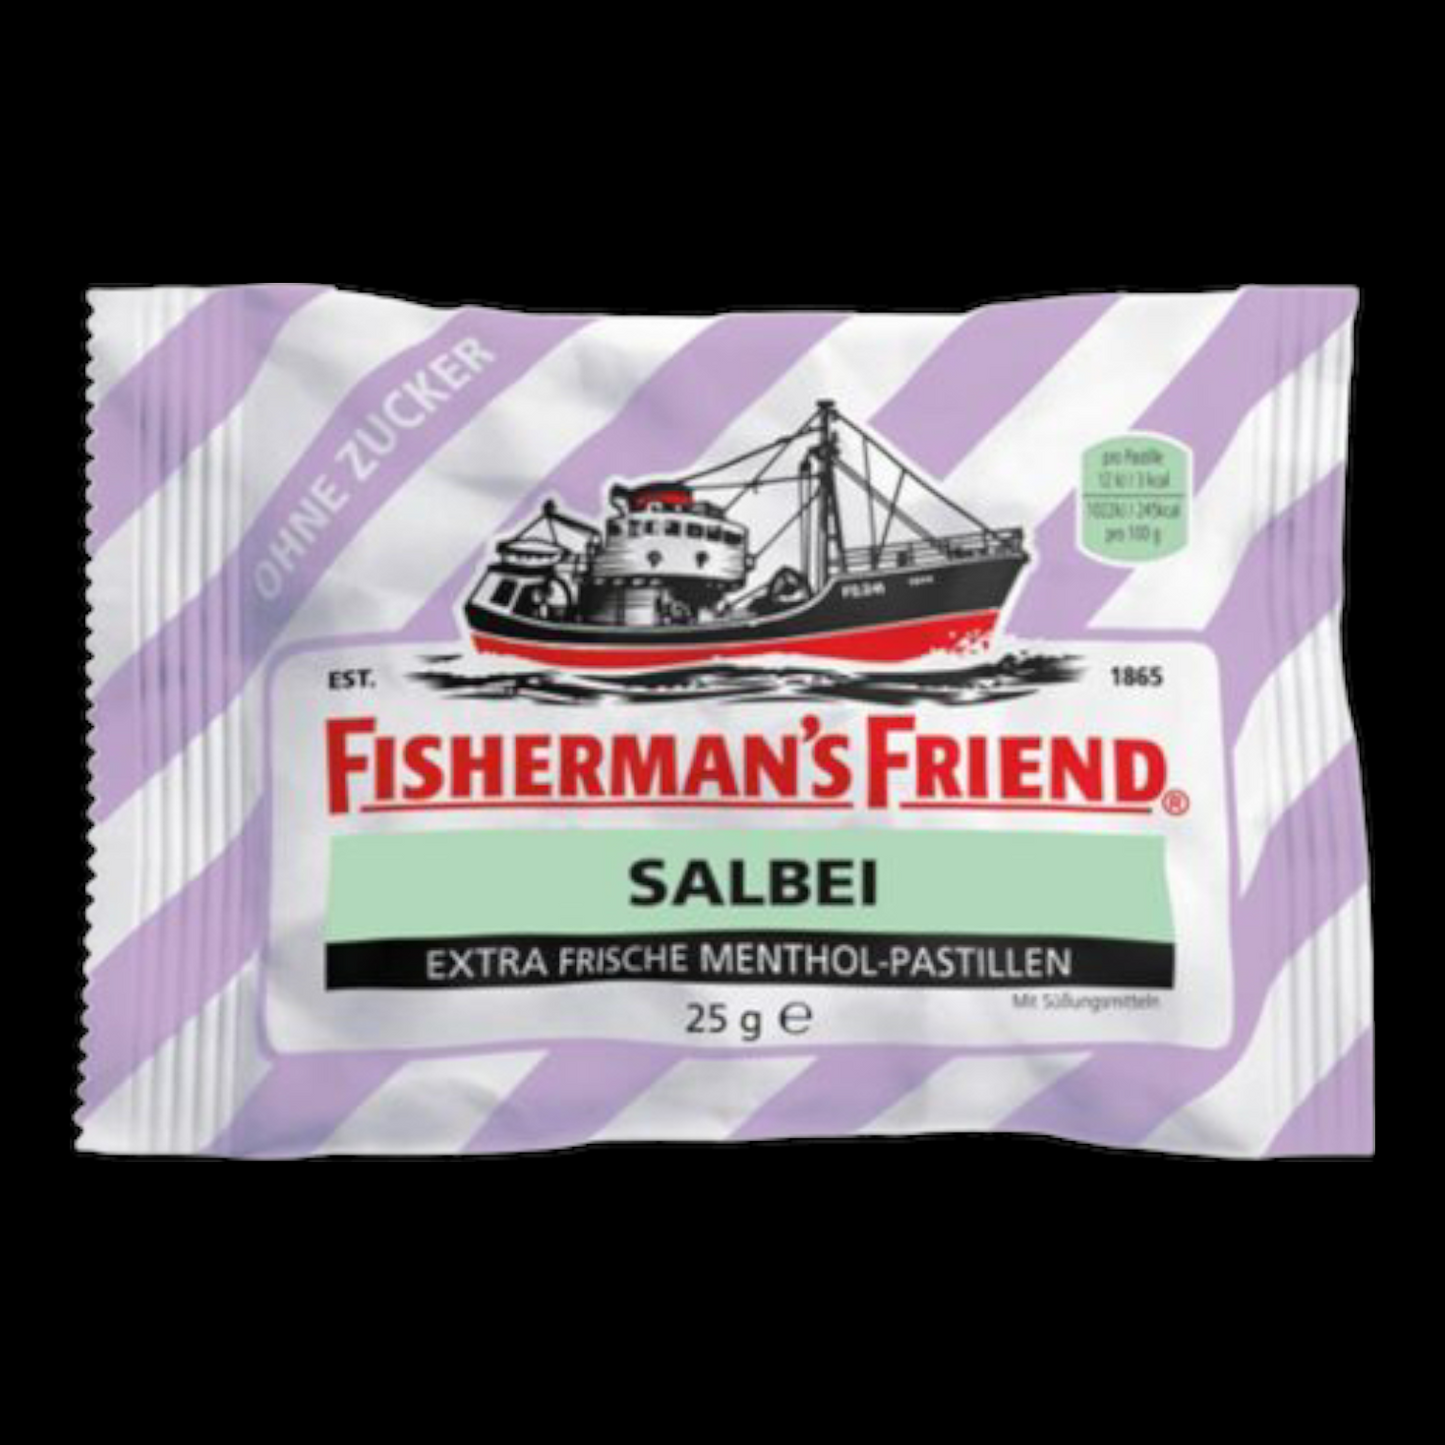 Fisherman's Friend Salbei ohne Zucker 25g